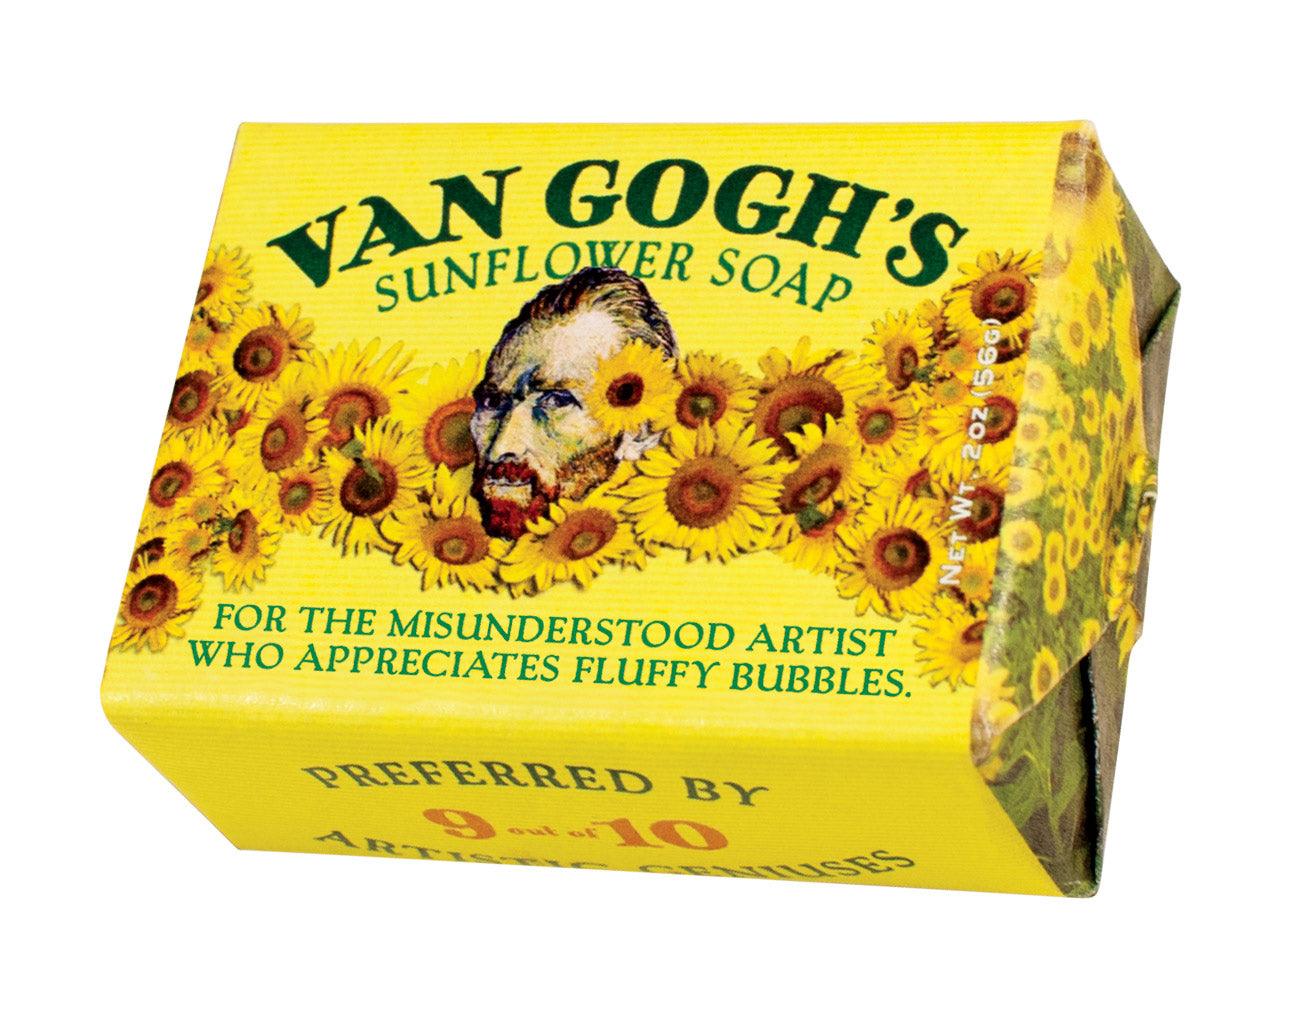 Van Gogh Soap